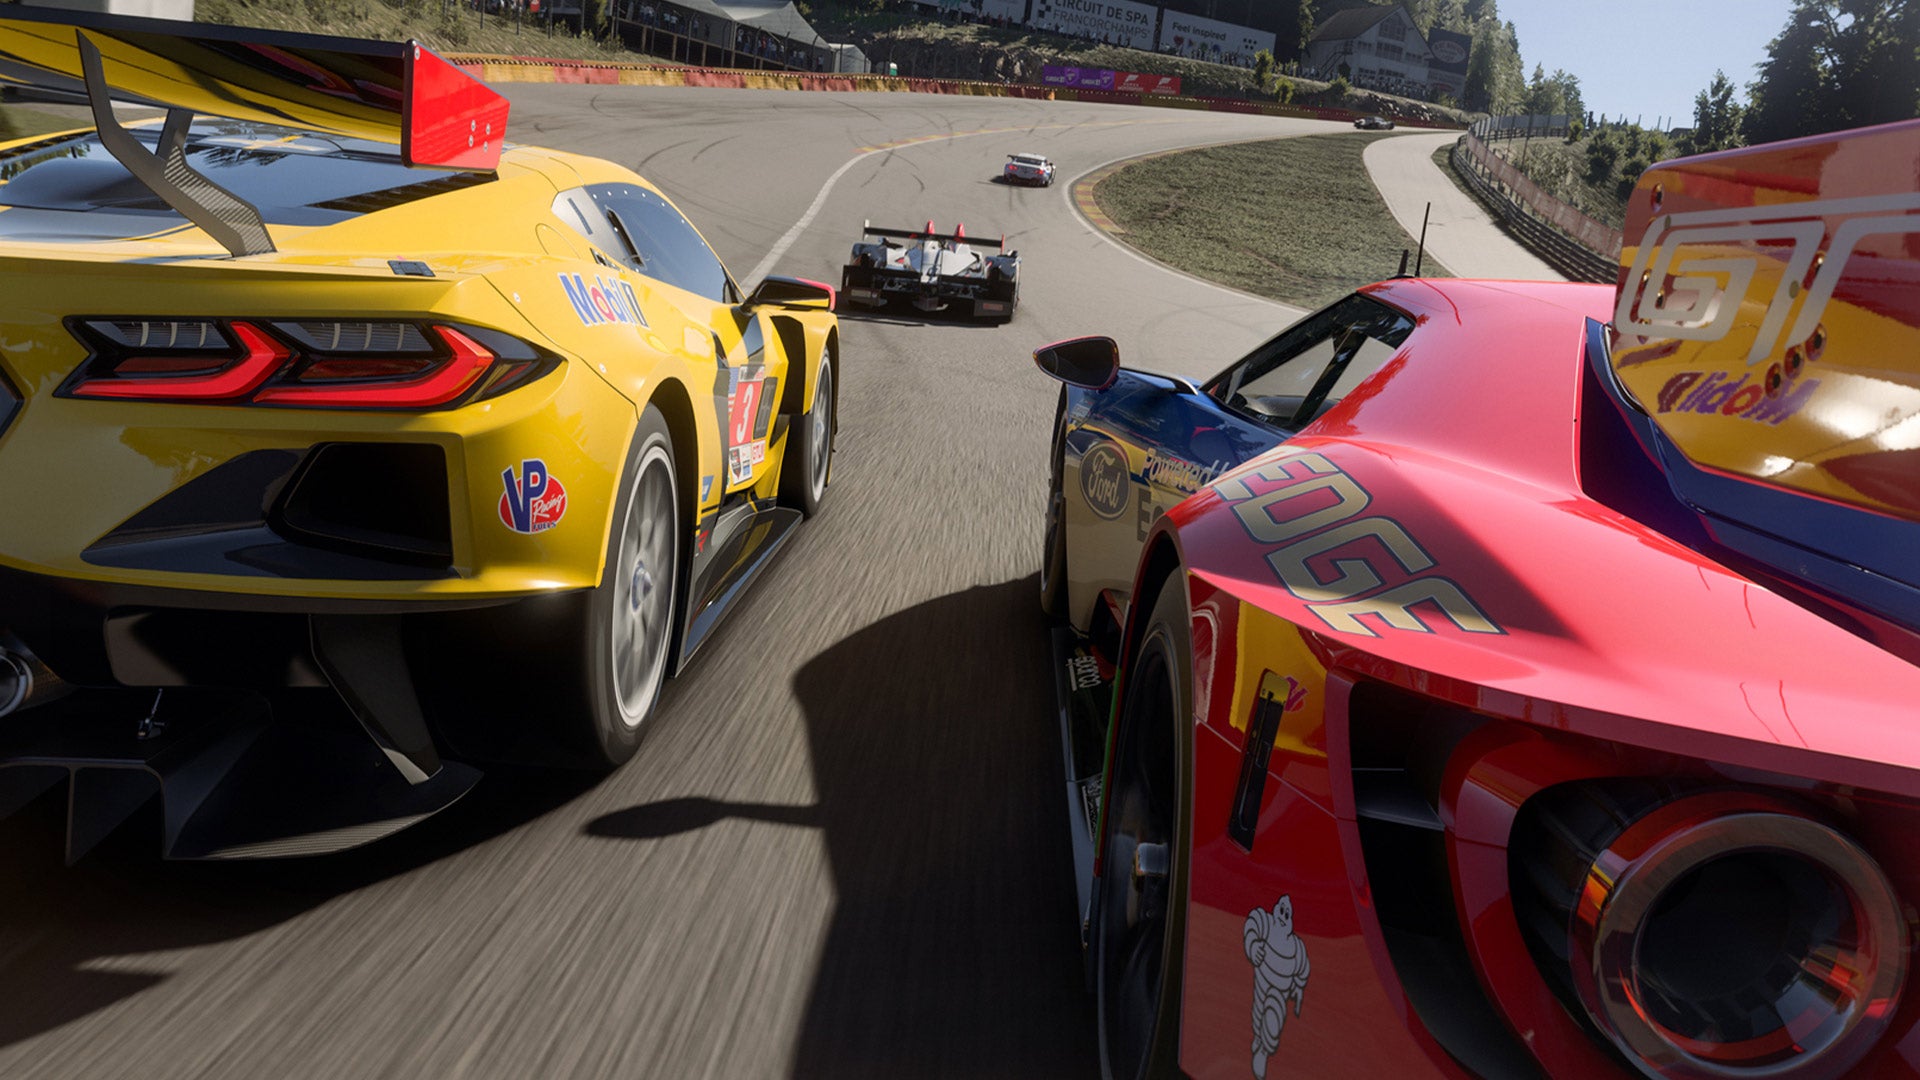 La próxima actualización de Forza Motorsport, que llegará esta semana, ajustará la "Clasificación de seguridad"